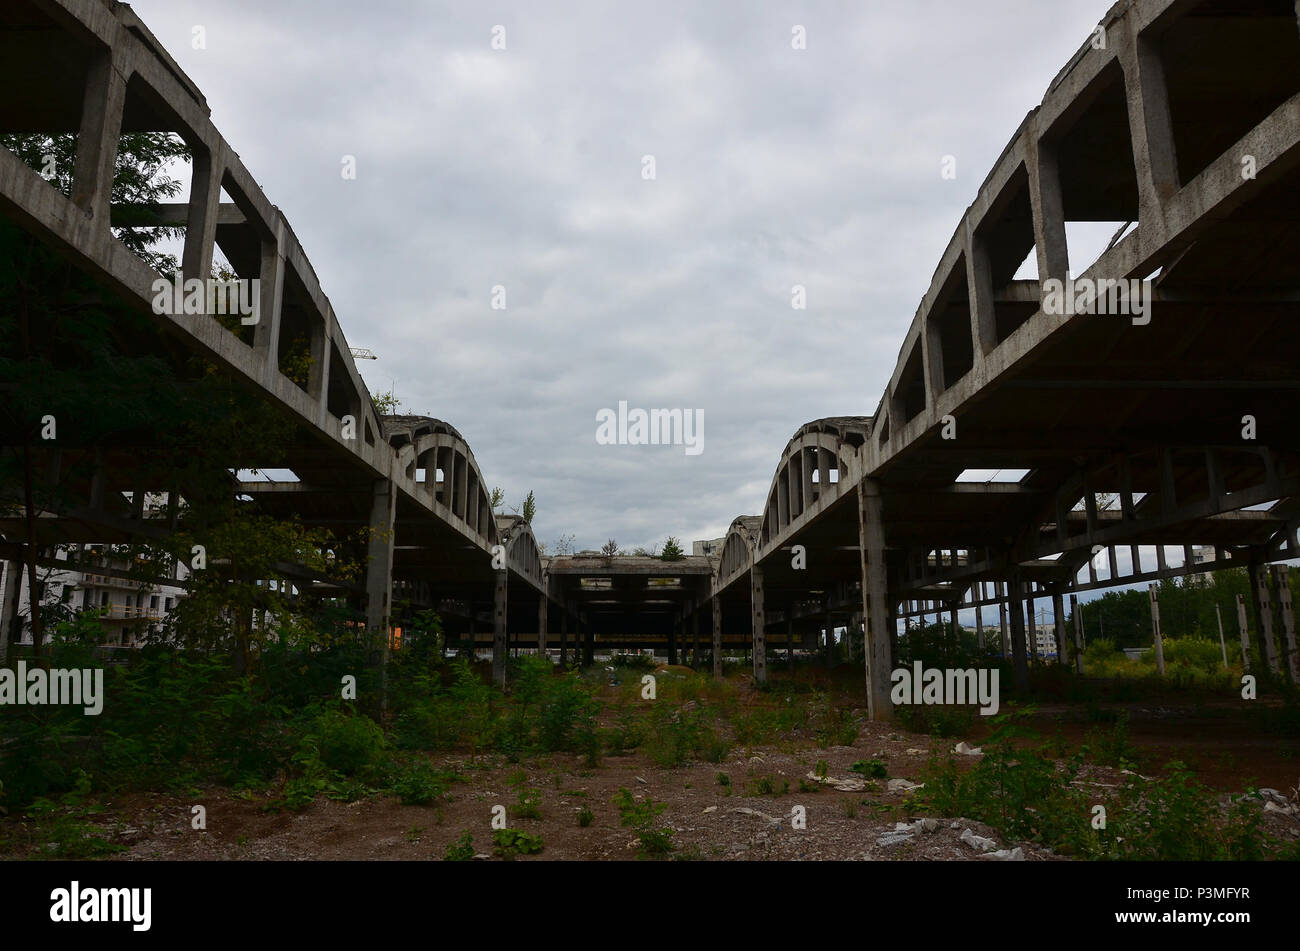 Immagine di panorama di un industriale abbandonato hangar con un tetto danneggiato. Foto sulla lente grandangolare Foto Stock